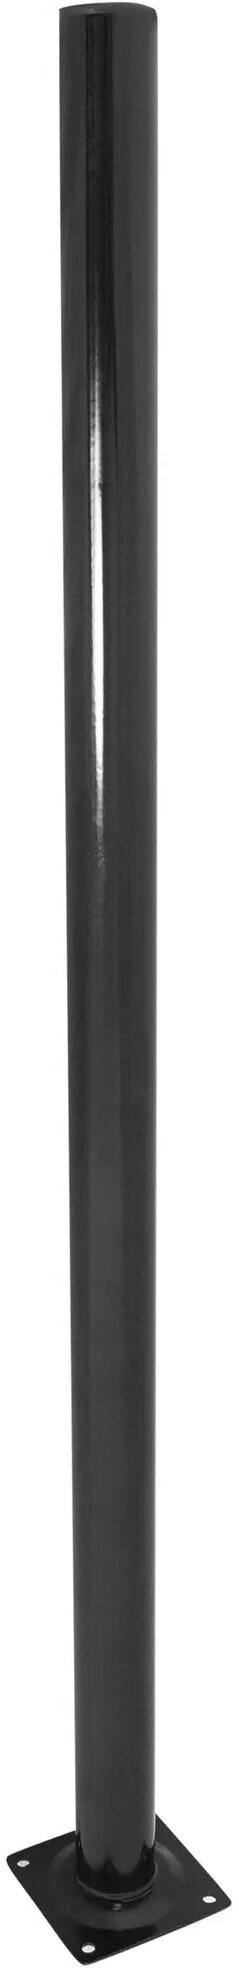 Ножка круглая 800х30 мм сталь максимальная нагрузка 50 кг цвет черный